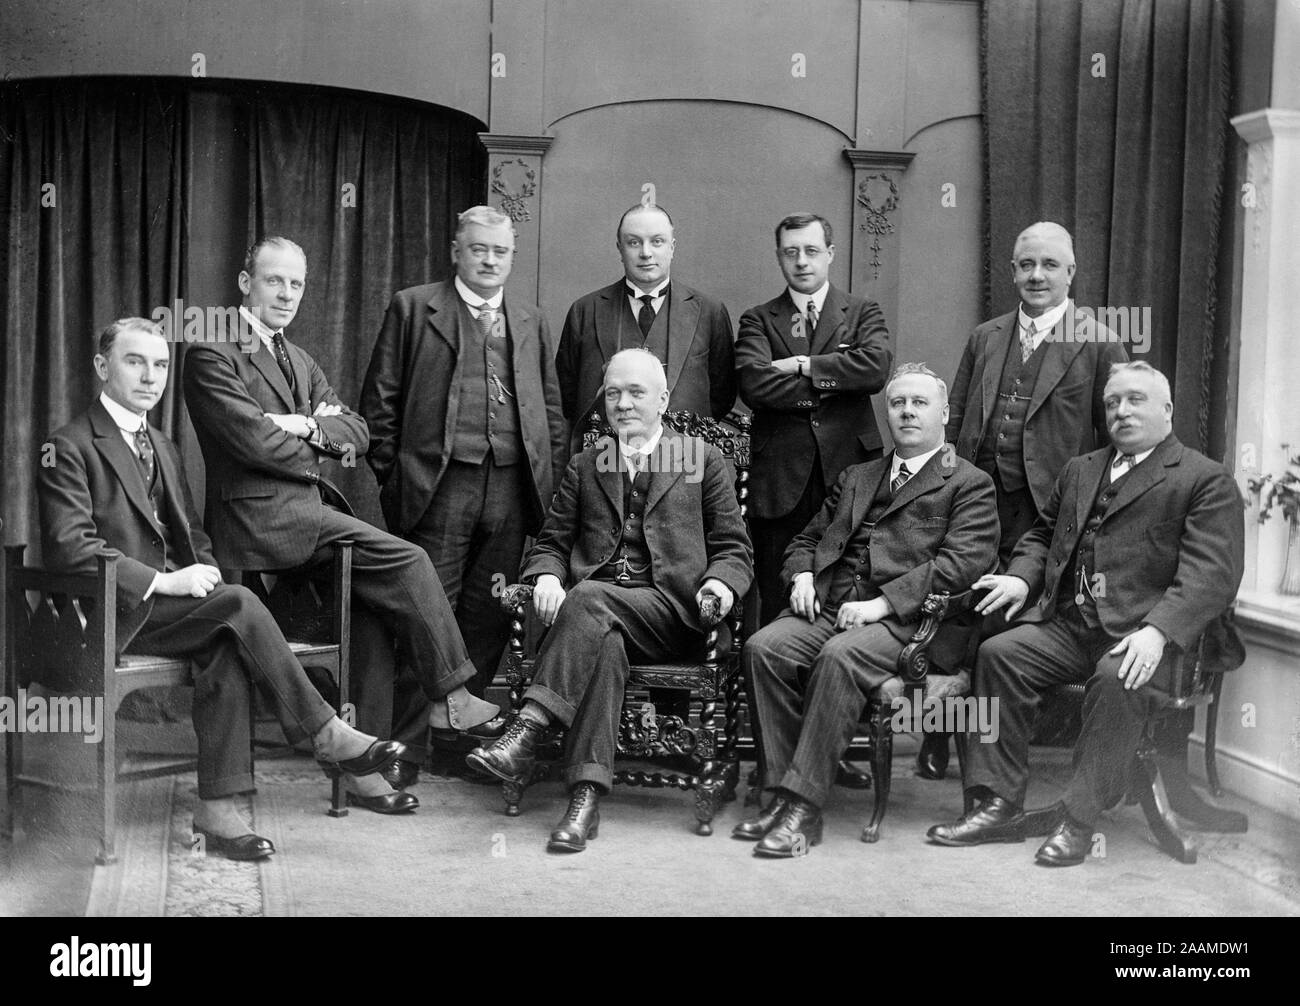 L'un des premiers Anglais Edwardian vintage photographie noir et blanc montrant un groupe d'hommes, certains assis, d'un certain rang, à l'intérieur. Indique le mode de l'époque. Banque D'Images